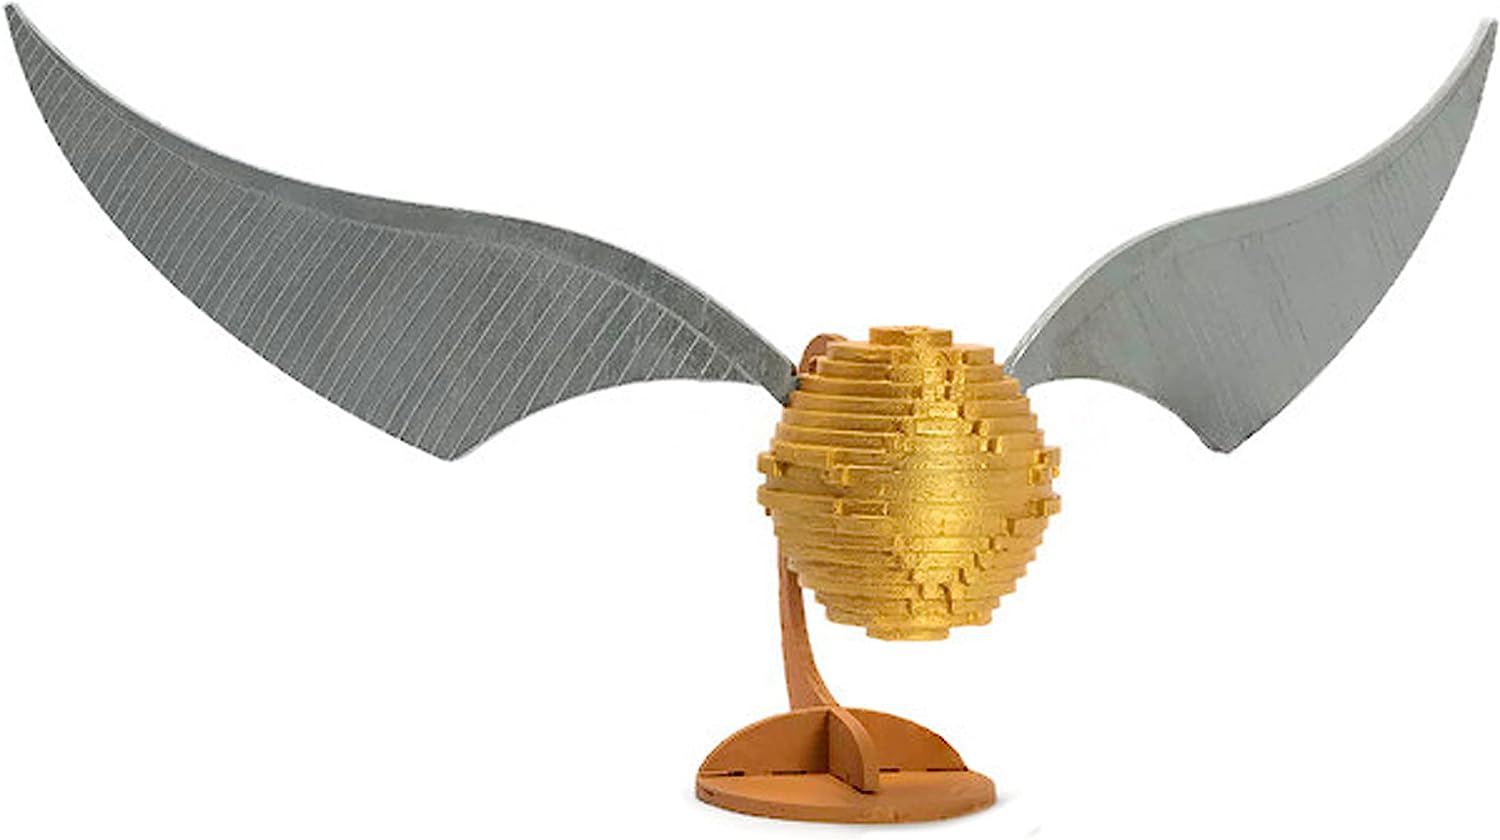 ハリー・ポッター アメリカ直輸入 おもちゃ 玩具 Harry Potter Incredibuilds Harry Potter Golden Snitch 3D Wood Puzzle & Model Figure Kit (26 Pcs) - Build & Paint Your Own 3-D Book Movie Toy - Hoハリー・ポッター アメリカ直輸入 おもちゃ 玩具 Harry Potter 2